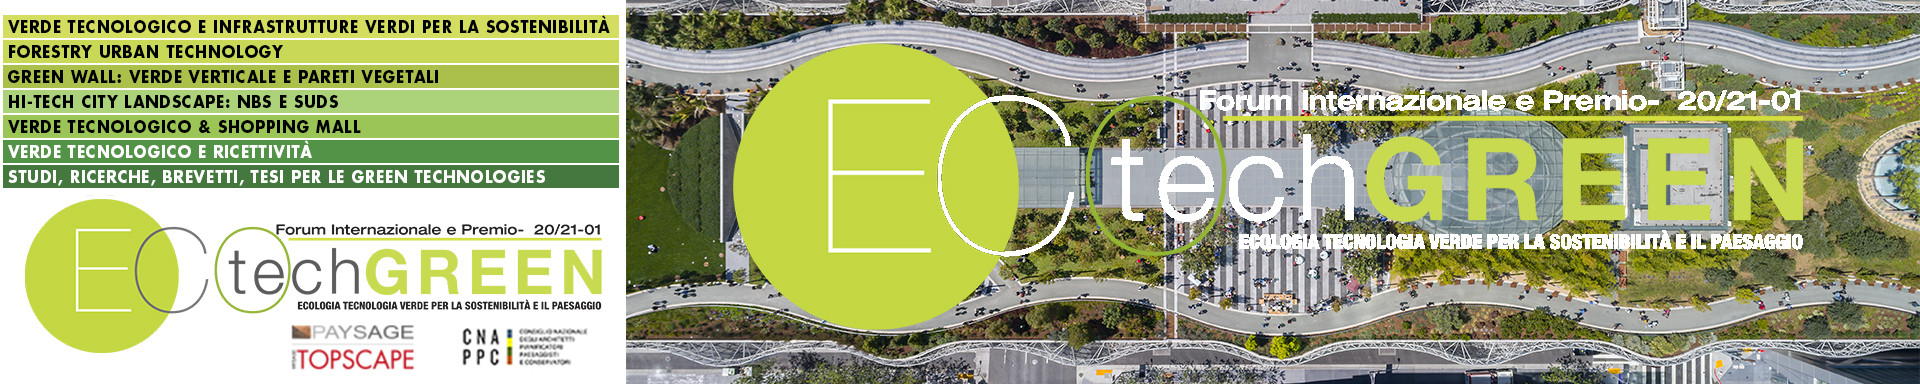 ECOtechGREEN – Ecologia Tecnologia Verde per la sostenibilità e il paesaggio. Forum e Premio Internazionale di progettazione